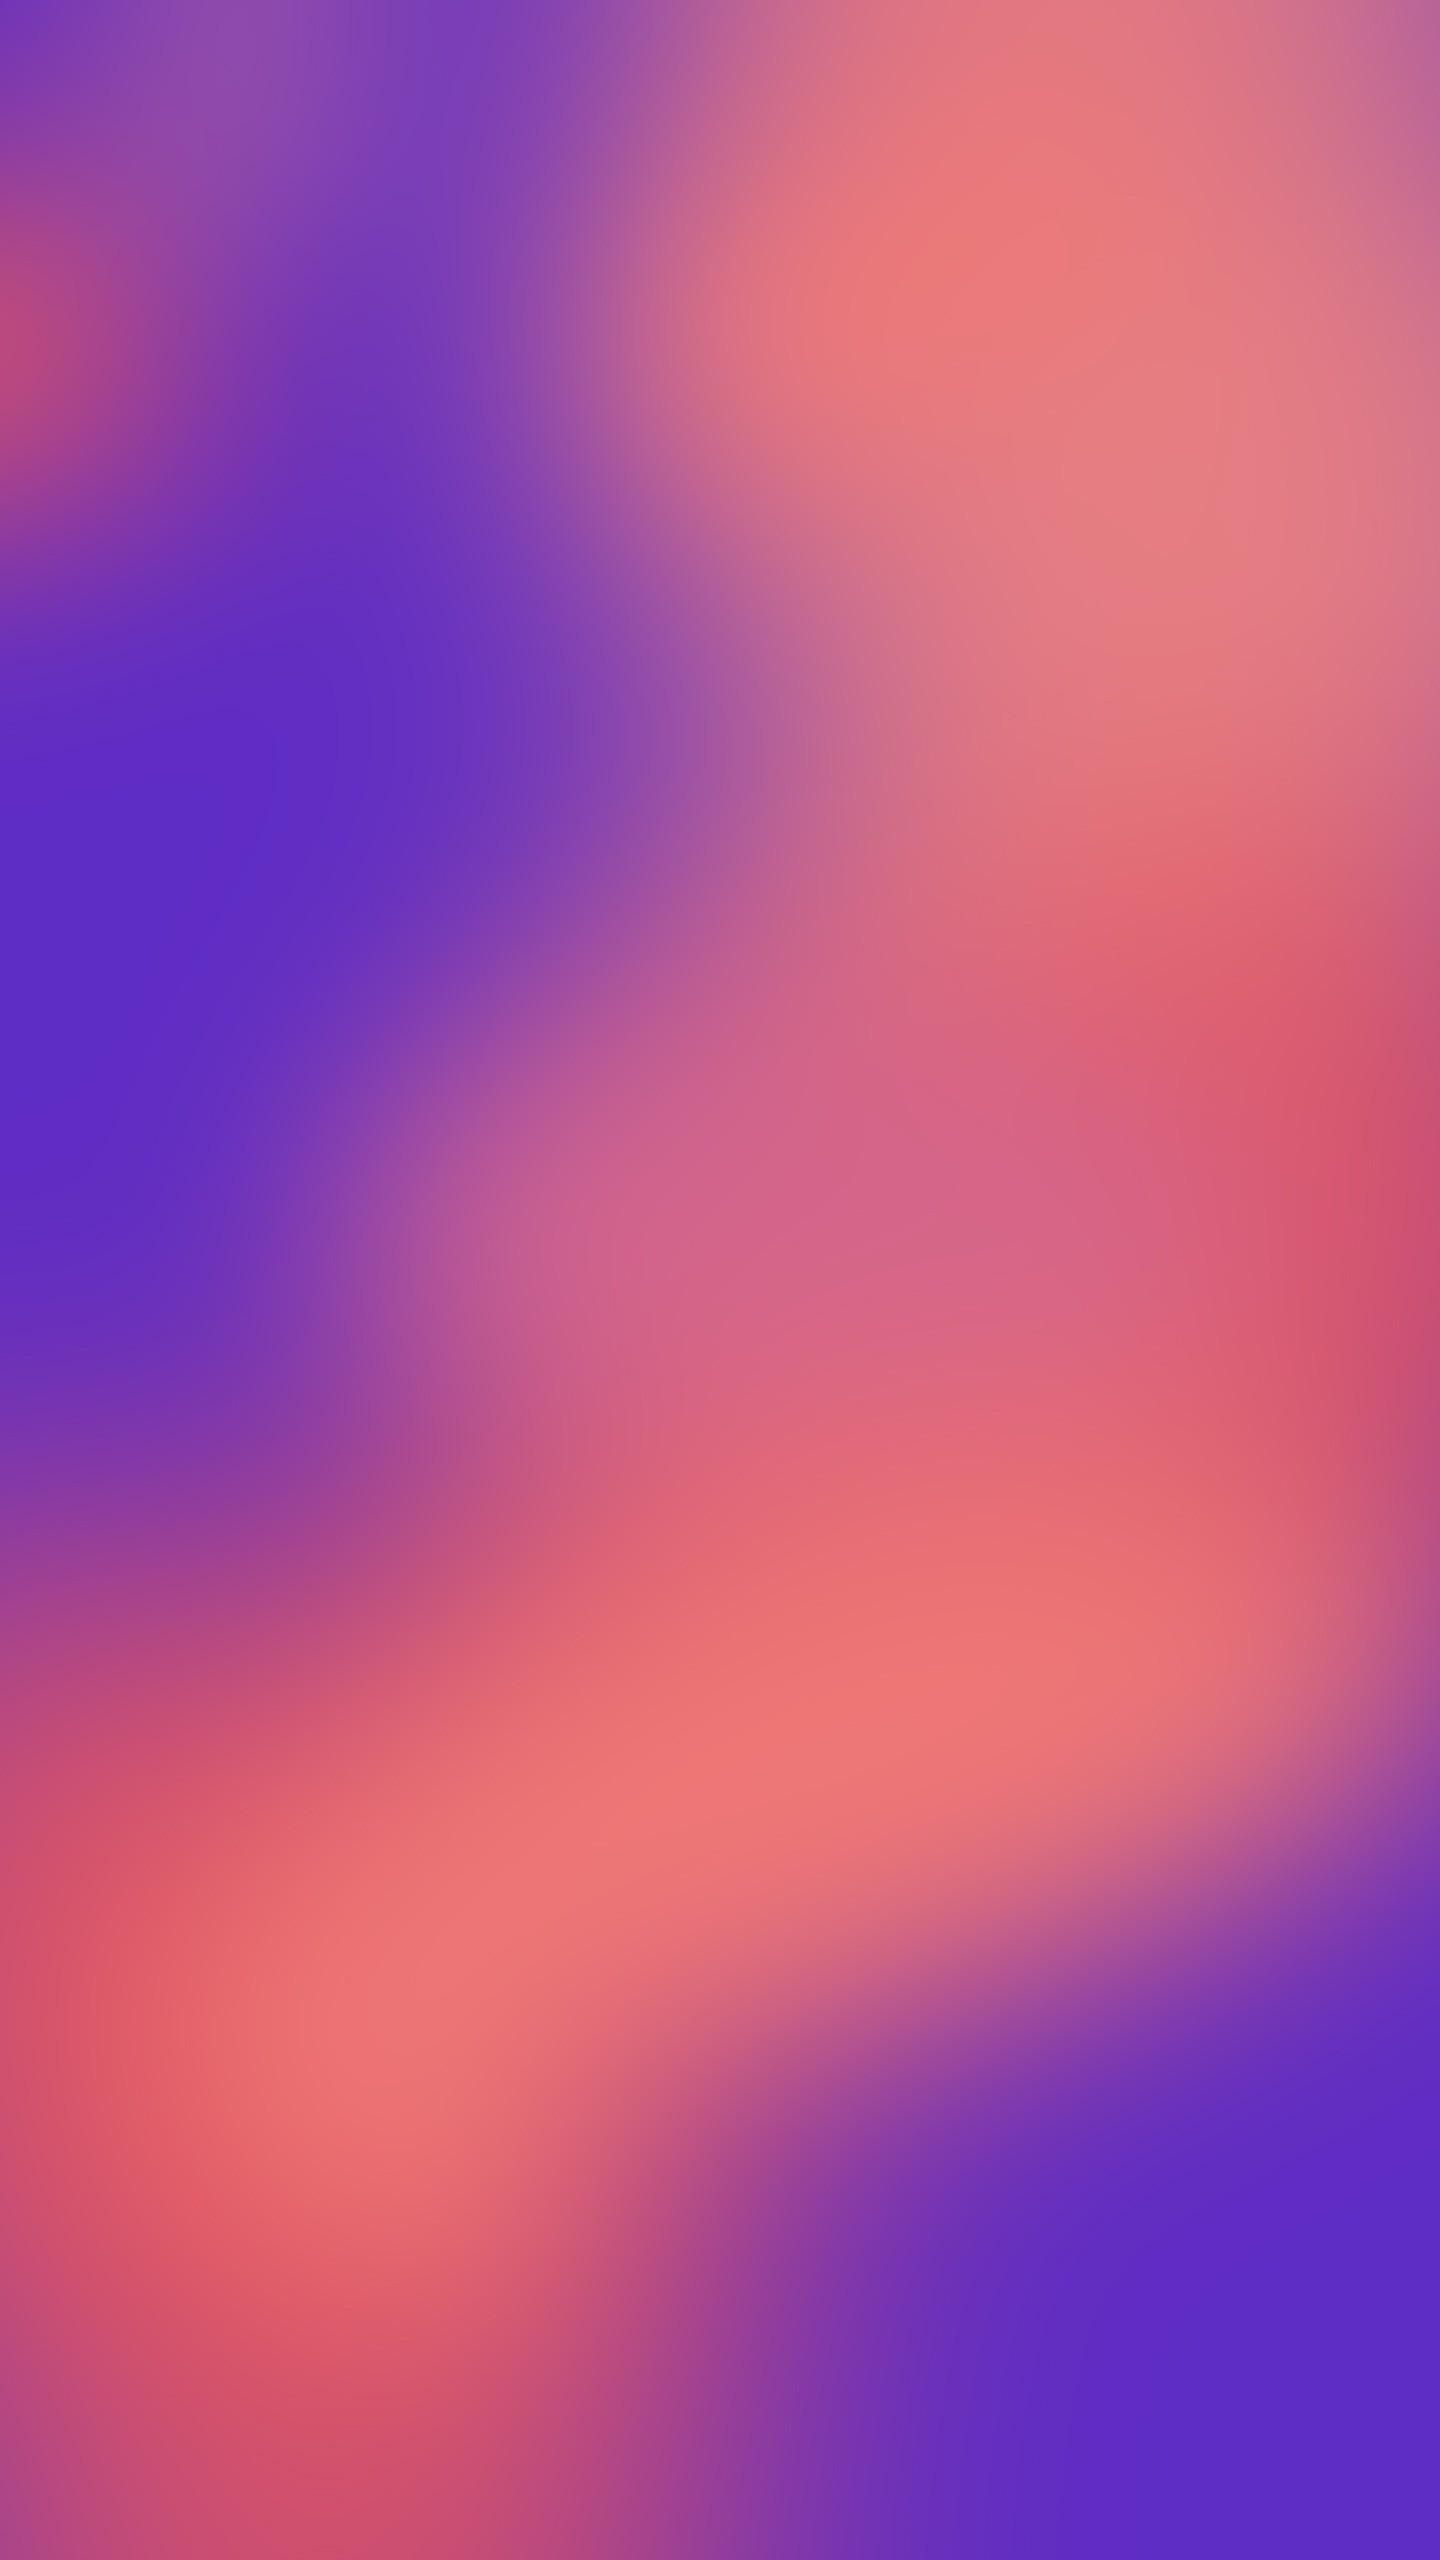 google pixel xl wallpaper hd,rosa,viola,cielo,viola,blu